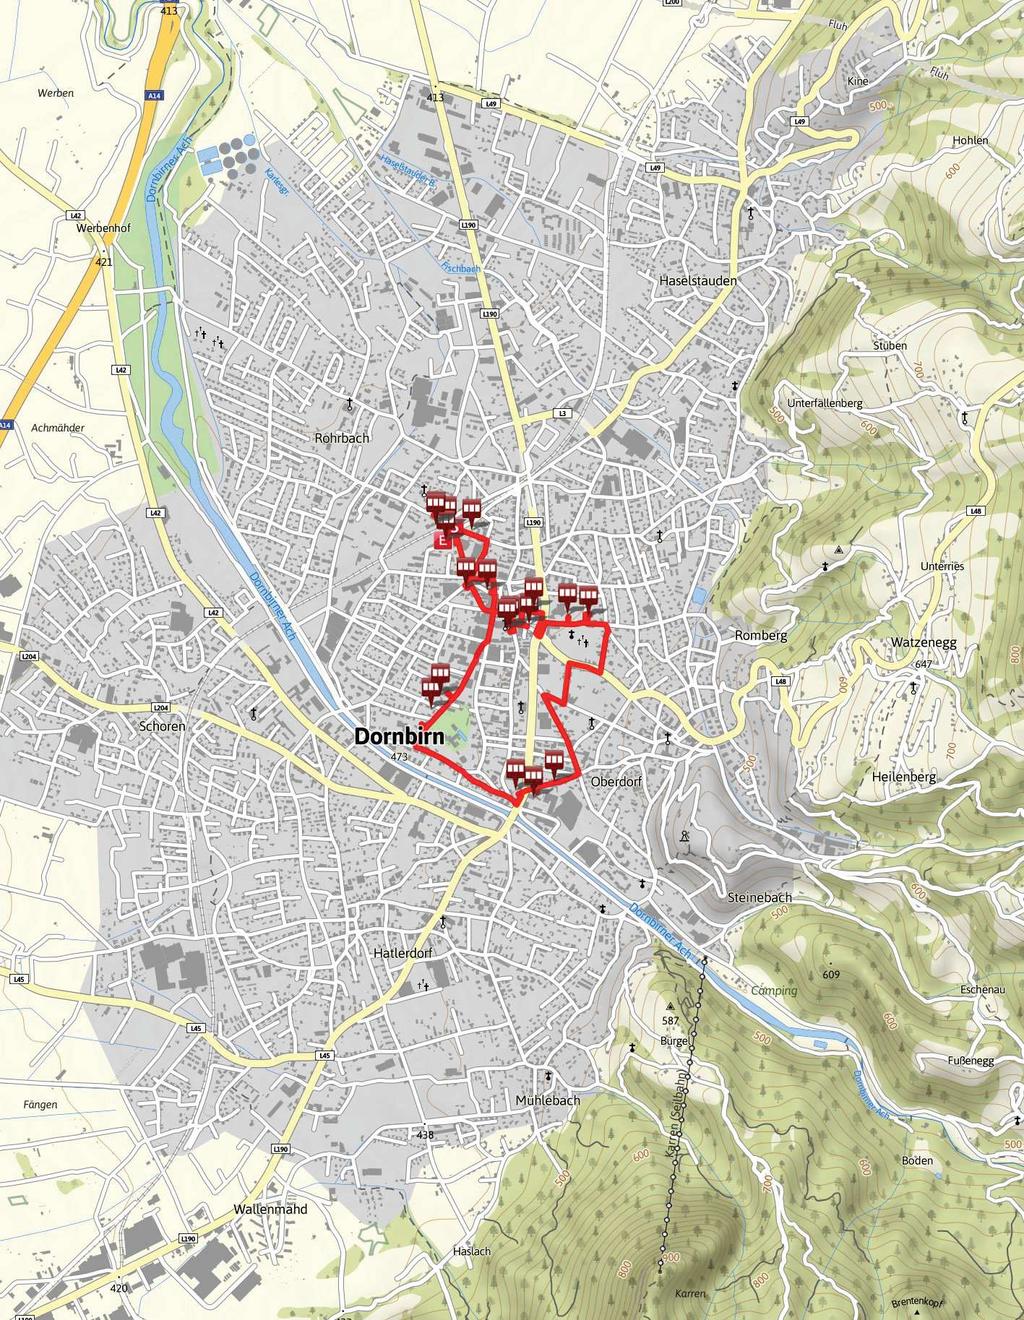 5.5 km 1:23 h 44 m 44 m SCHWIERIGKEIT - 1 / 12 Kartengrundlagen: outdooractive Kartografie; Deutschland: GeoBasis-DE / BKG 2015, GeoBasis-DE / GEObasis.nrw 2015, Österreich: 1996-2015 here.